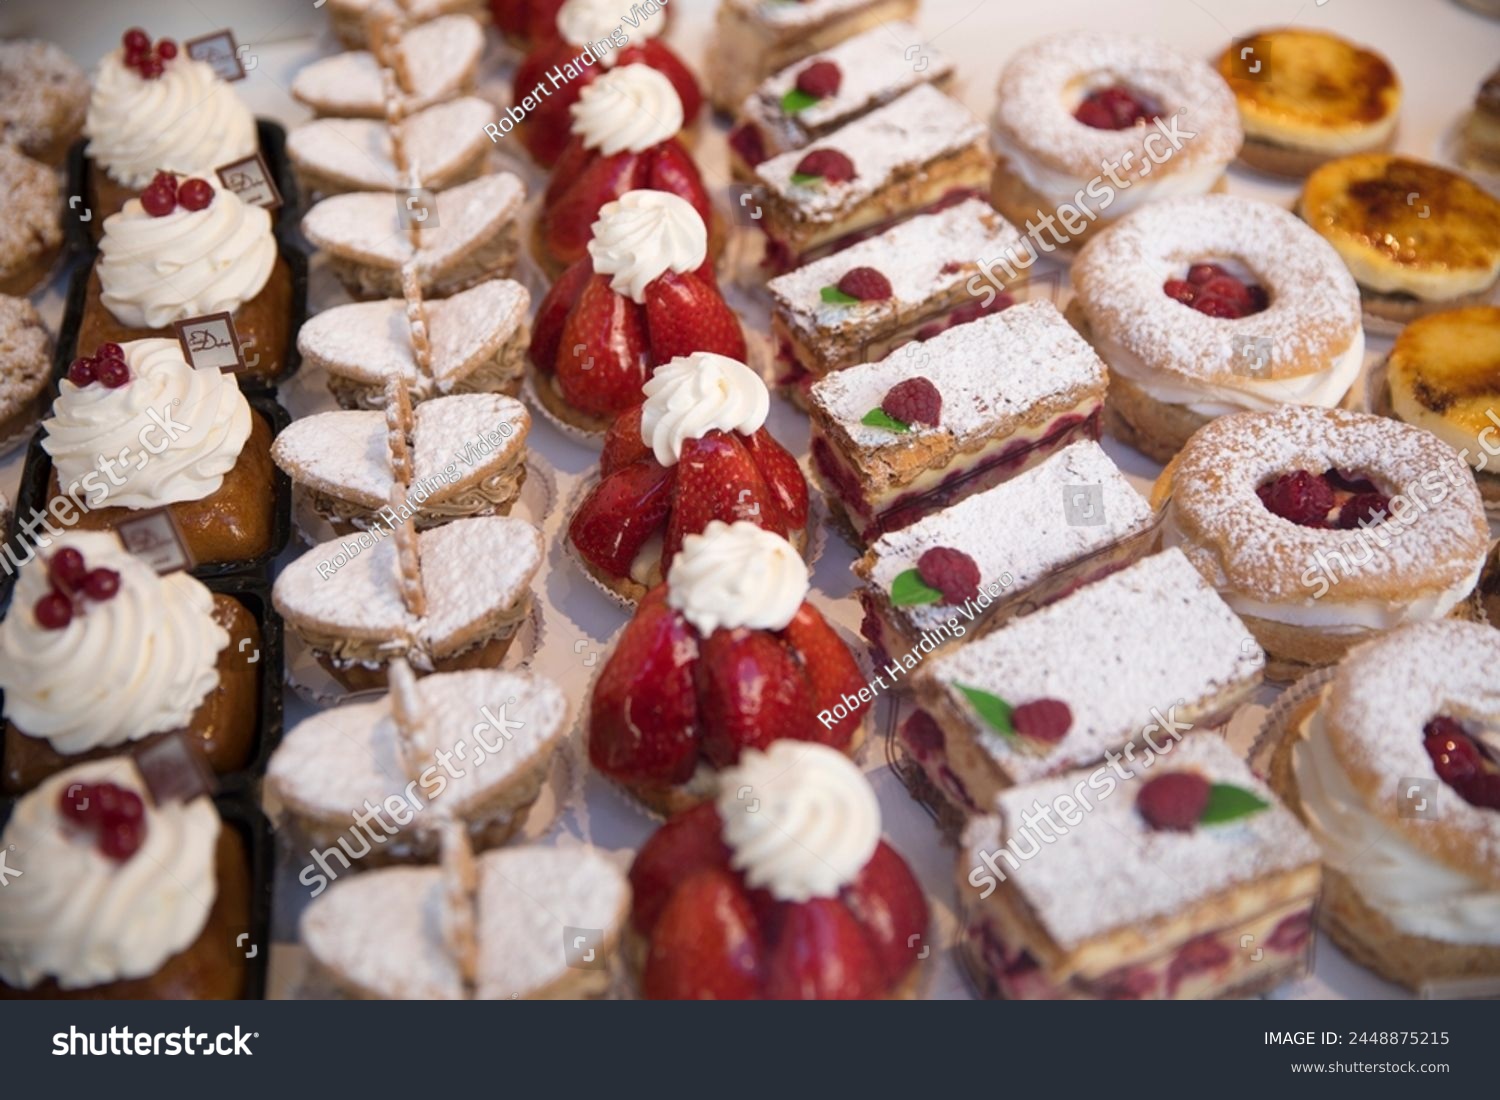 Tasty pastries in window of French patisserie shop, Arras, Pas-de-Calais, Hauts-de-France region, France, Europe #2448875215